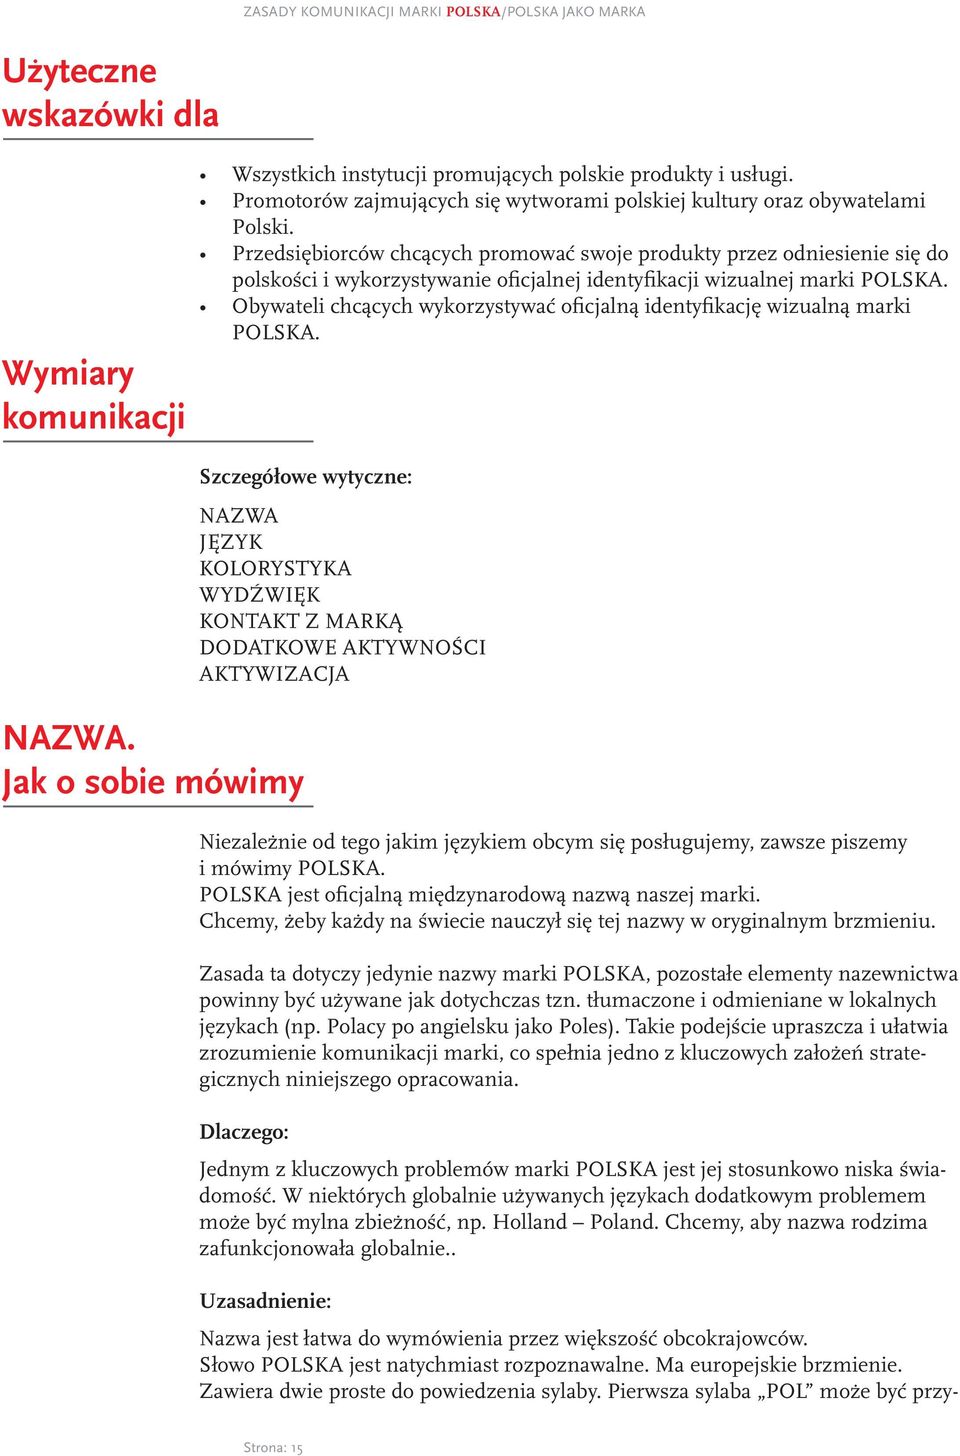 Przedsiębiorców chcących promować swoje produkty przez odniesienie się do polskości i wykorzystywanie oficjalnej identyfikacji wizualnej marki POLSKA.